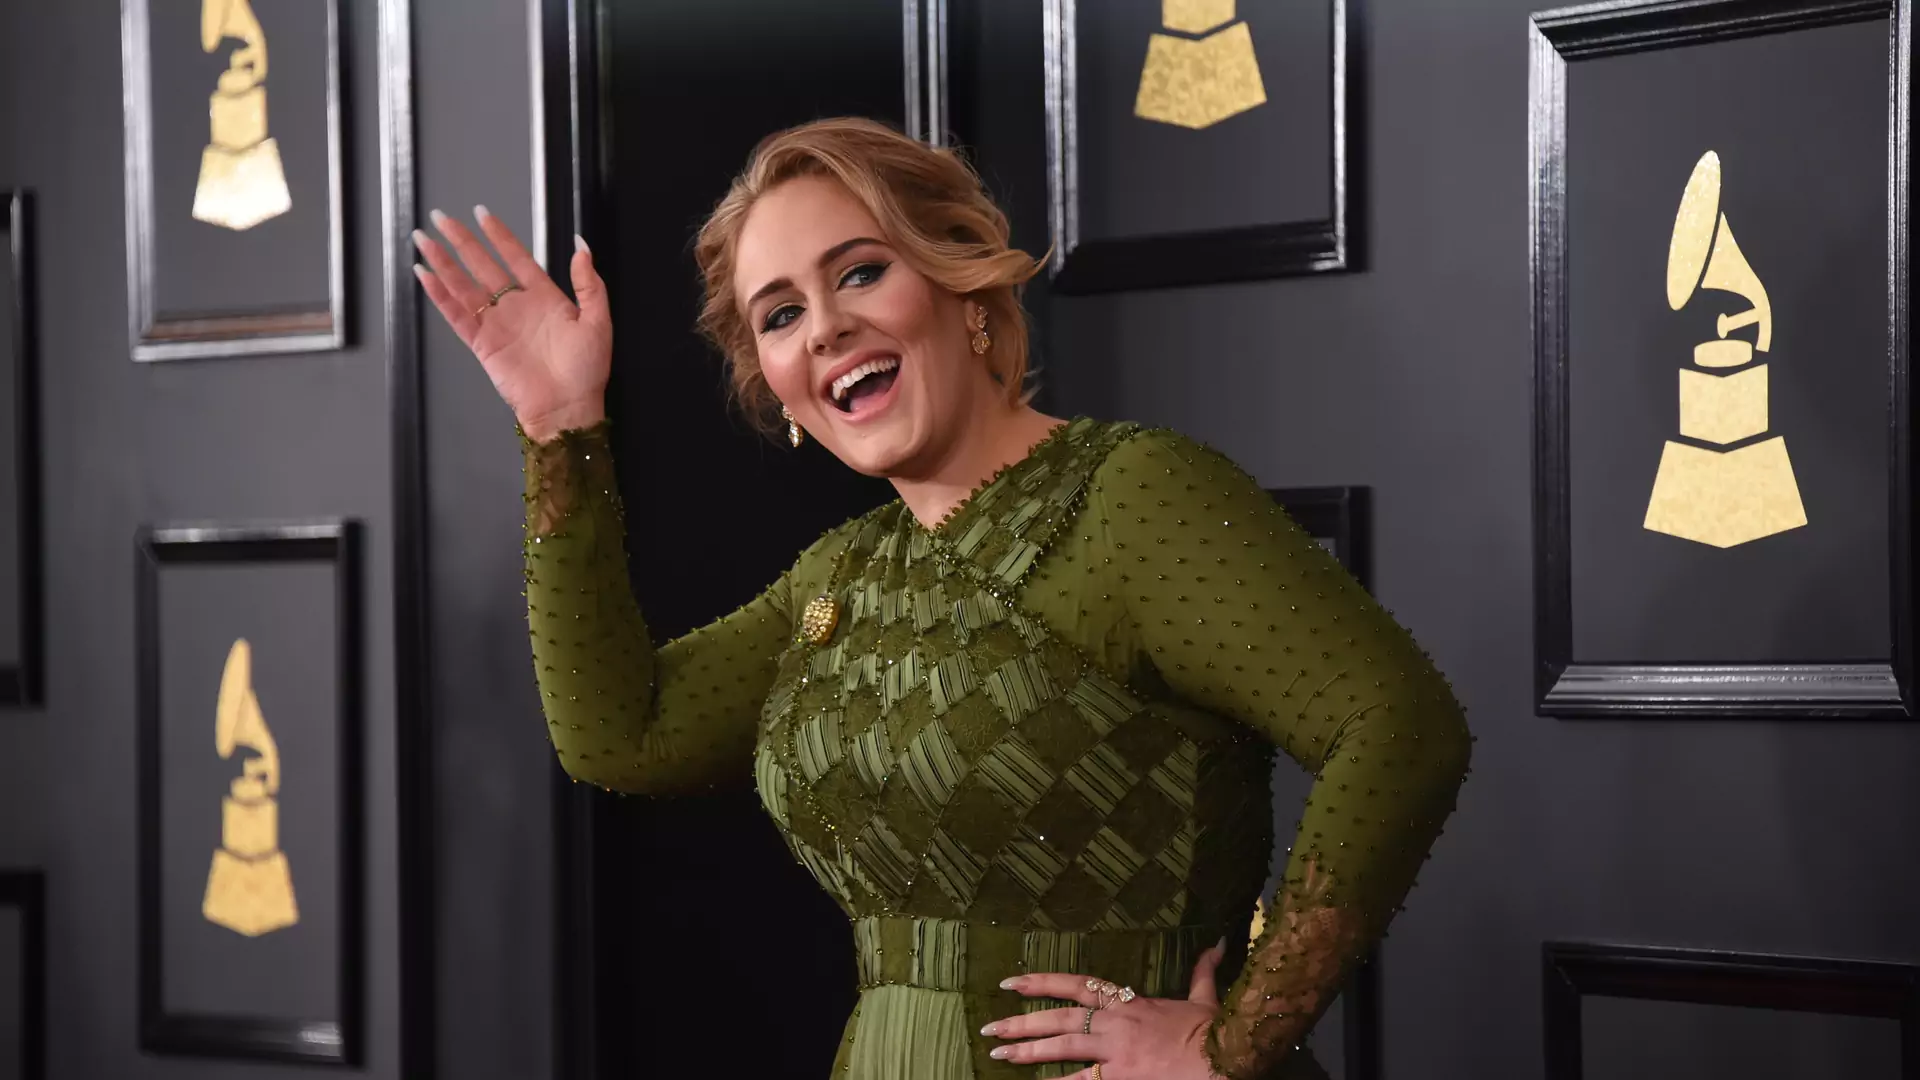 "Piłam ze Spice Girls!" - Adele imprezuje na koncercie słynnego girlsbandu